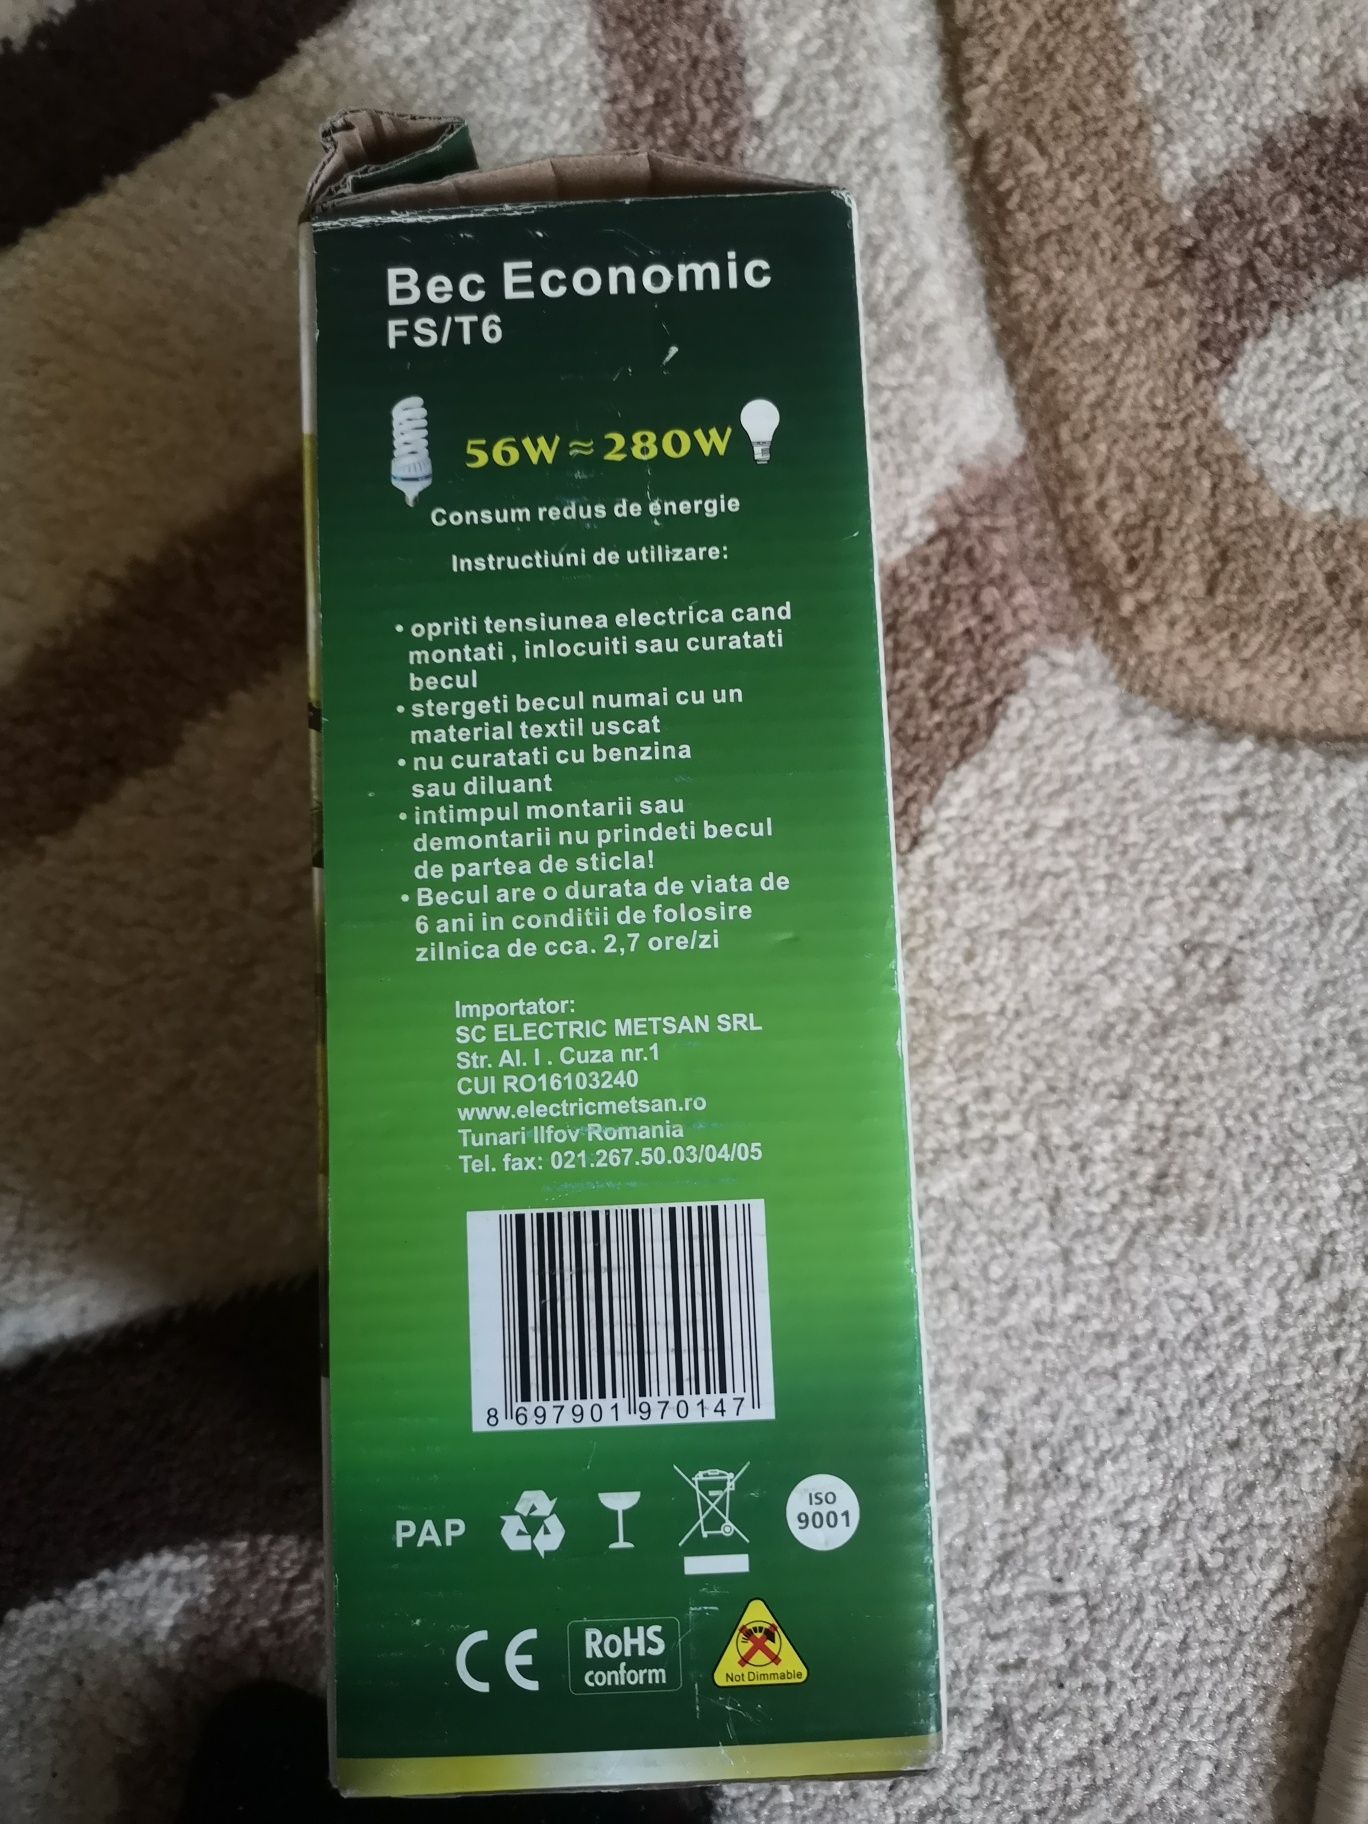 Bec economic 56w